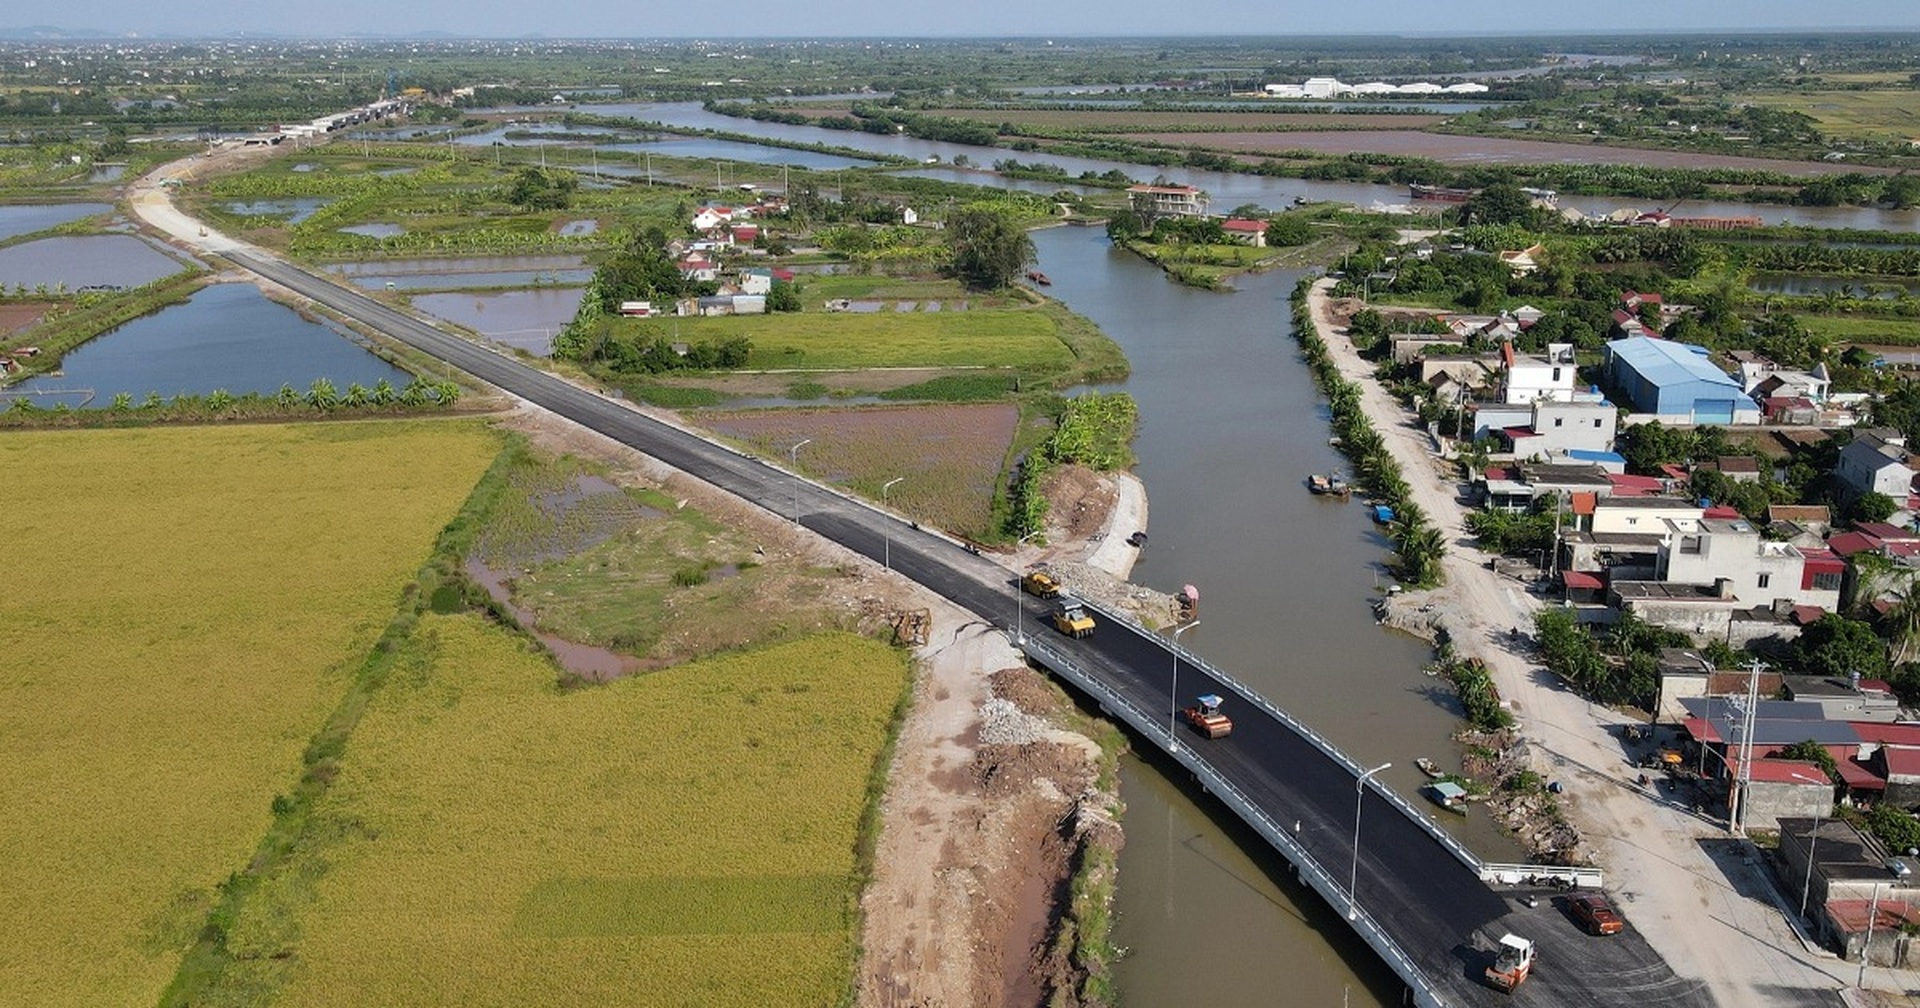 Hải Phòng: Tuyến đường trị giá hơn 1.300 tỷ đồng nối đôi bờ sông Thái Bình - Ảnh 1